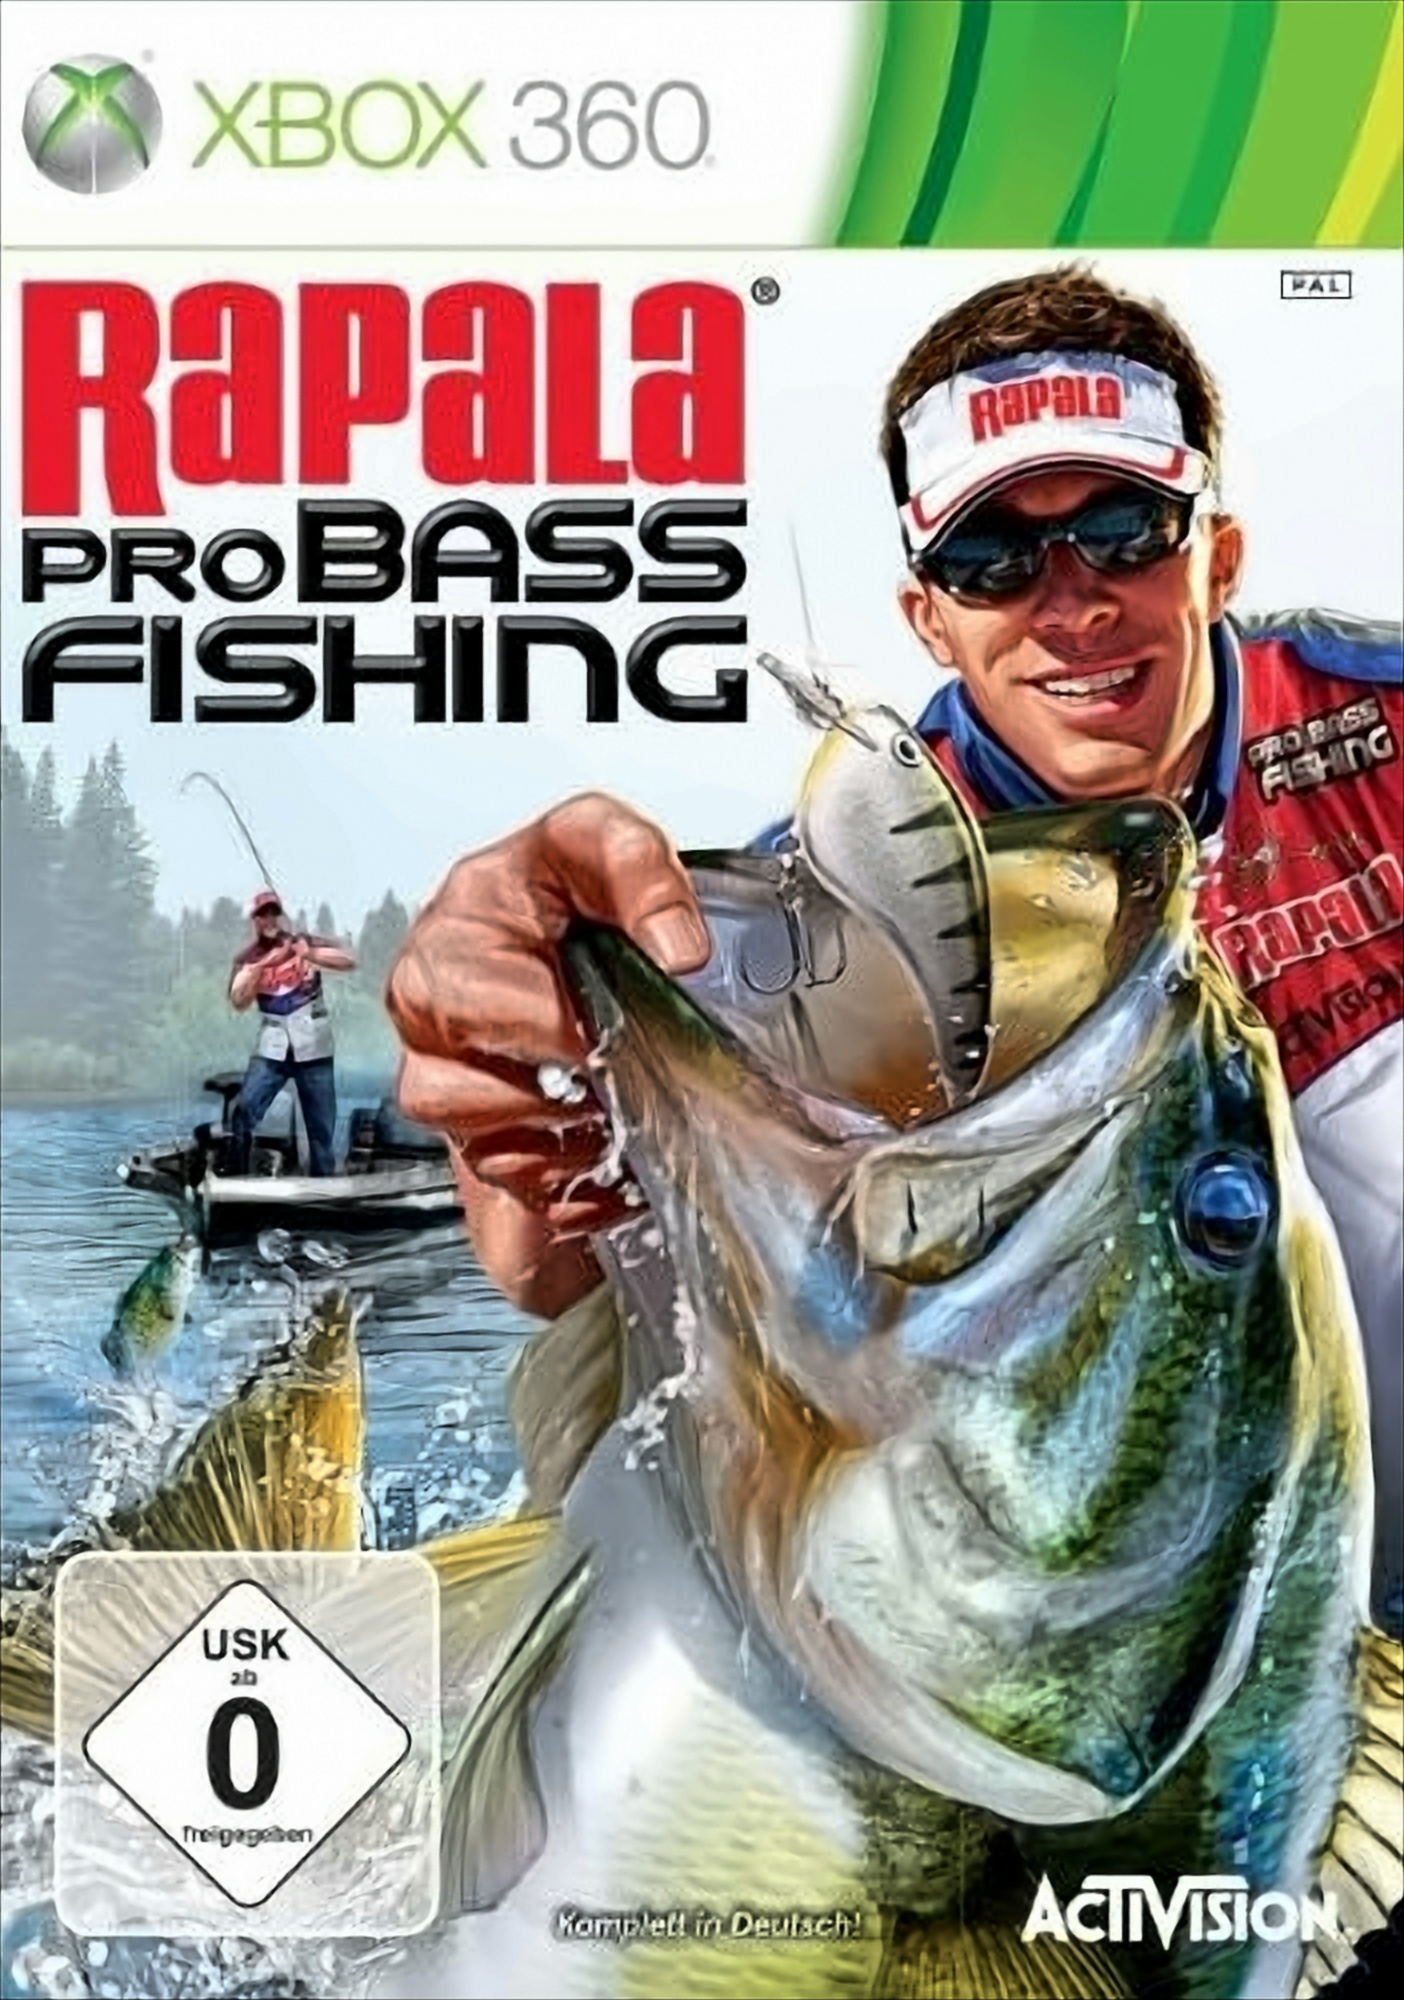 Pro 2010 - Bass Rapala [Xbox Budget XB360 360] Fishing